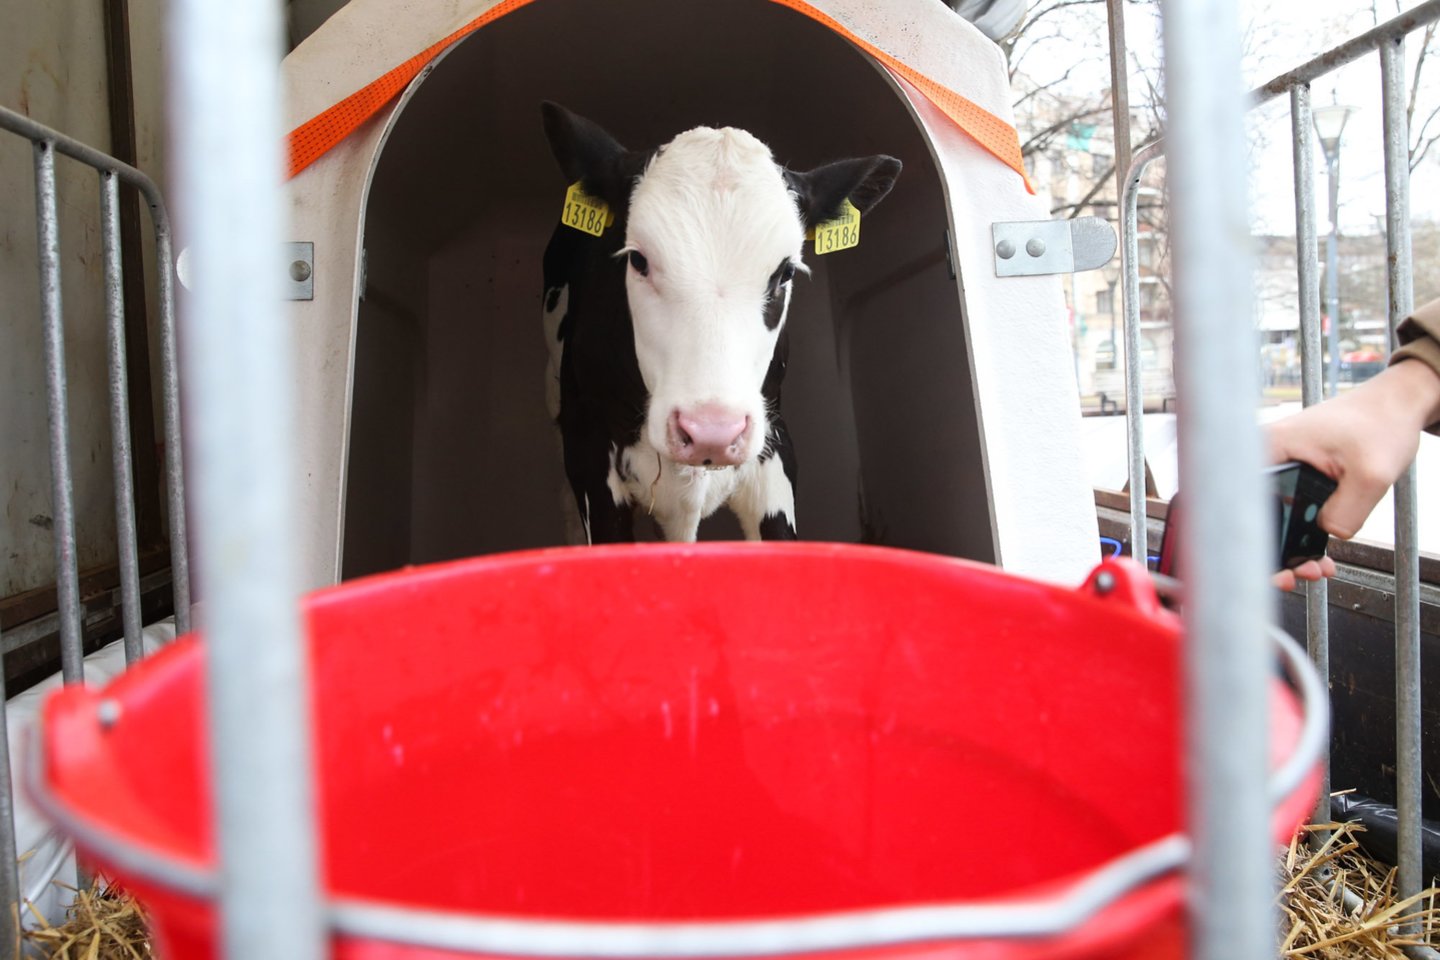 Krentančiomis pieno supirkimo kainomis nepatenkinti ūkininkai kovo 23 dieną planuoja didelę protesto akciją prie Seimo.<br>R.Danisevičiaus nuotr.